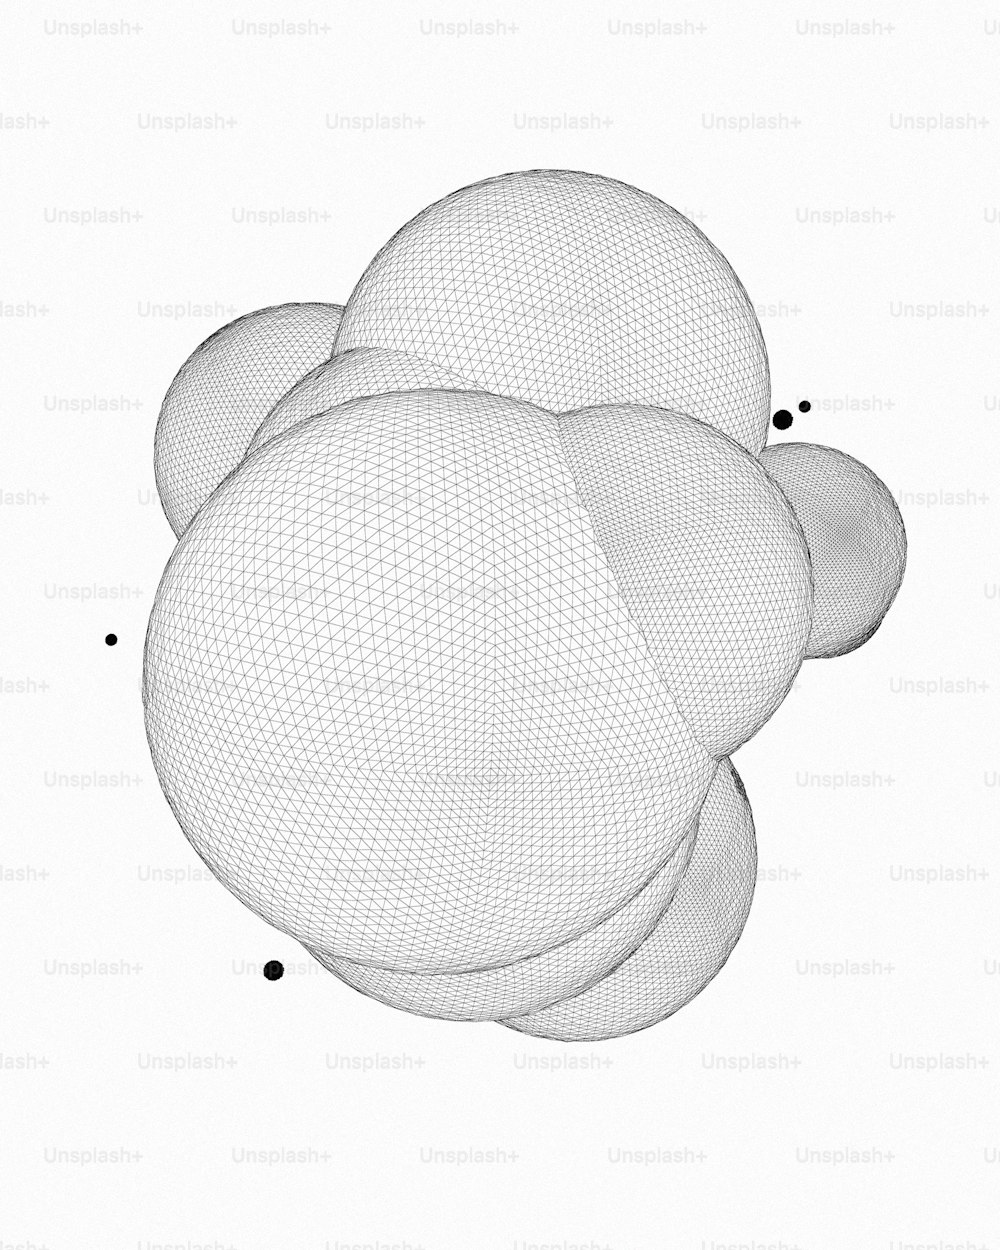 3つの球のコンピュータ生成画像